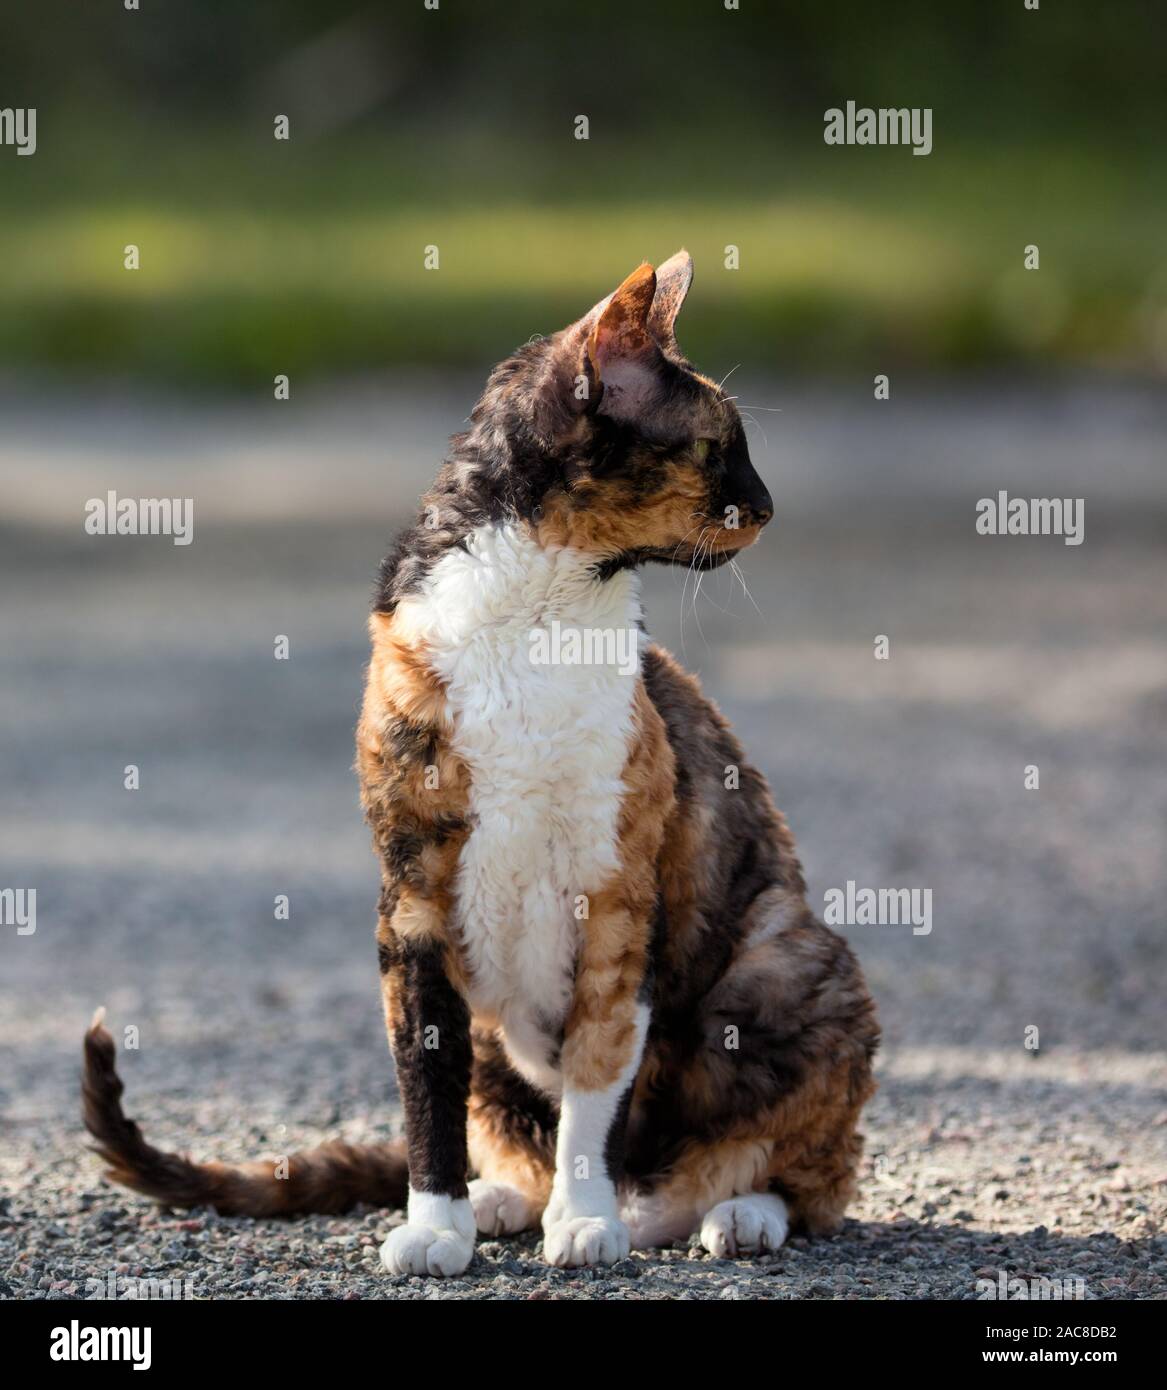 Cornish Rex color gato sentado en la grava y mirando alrededor Foto de stock